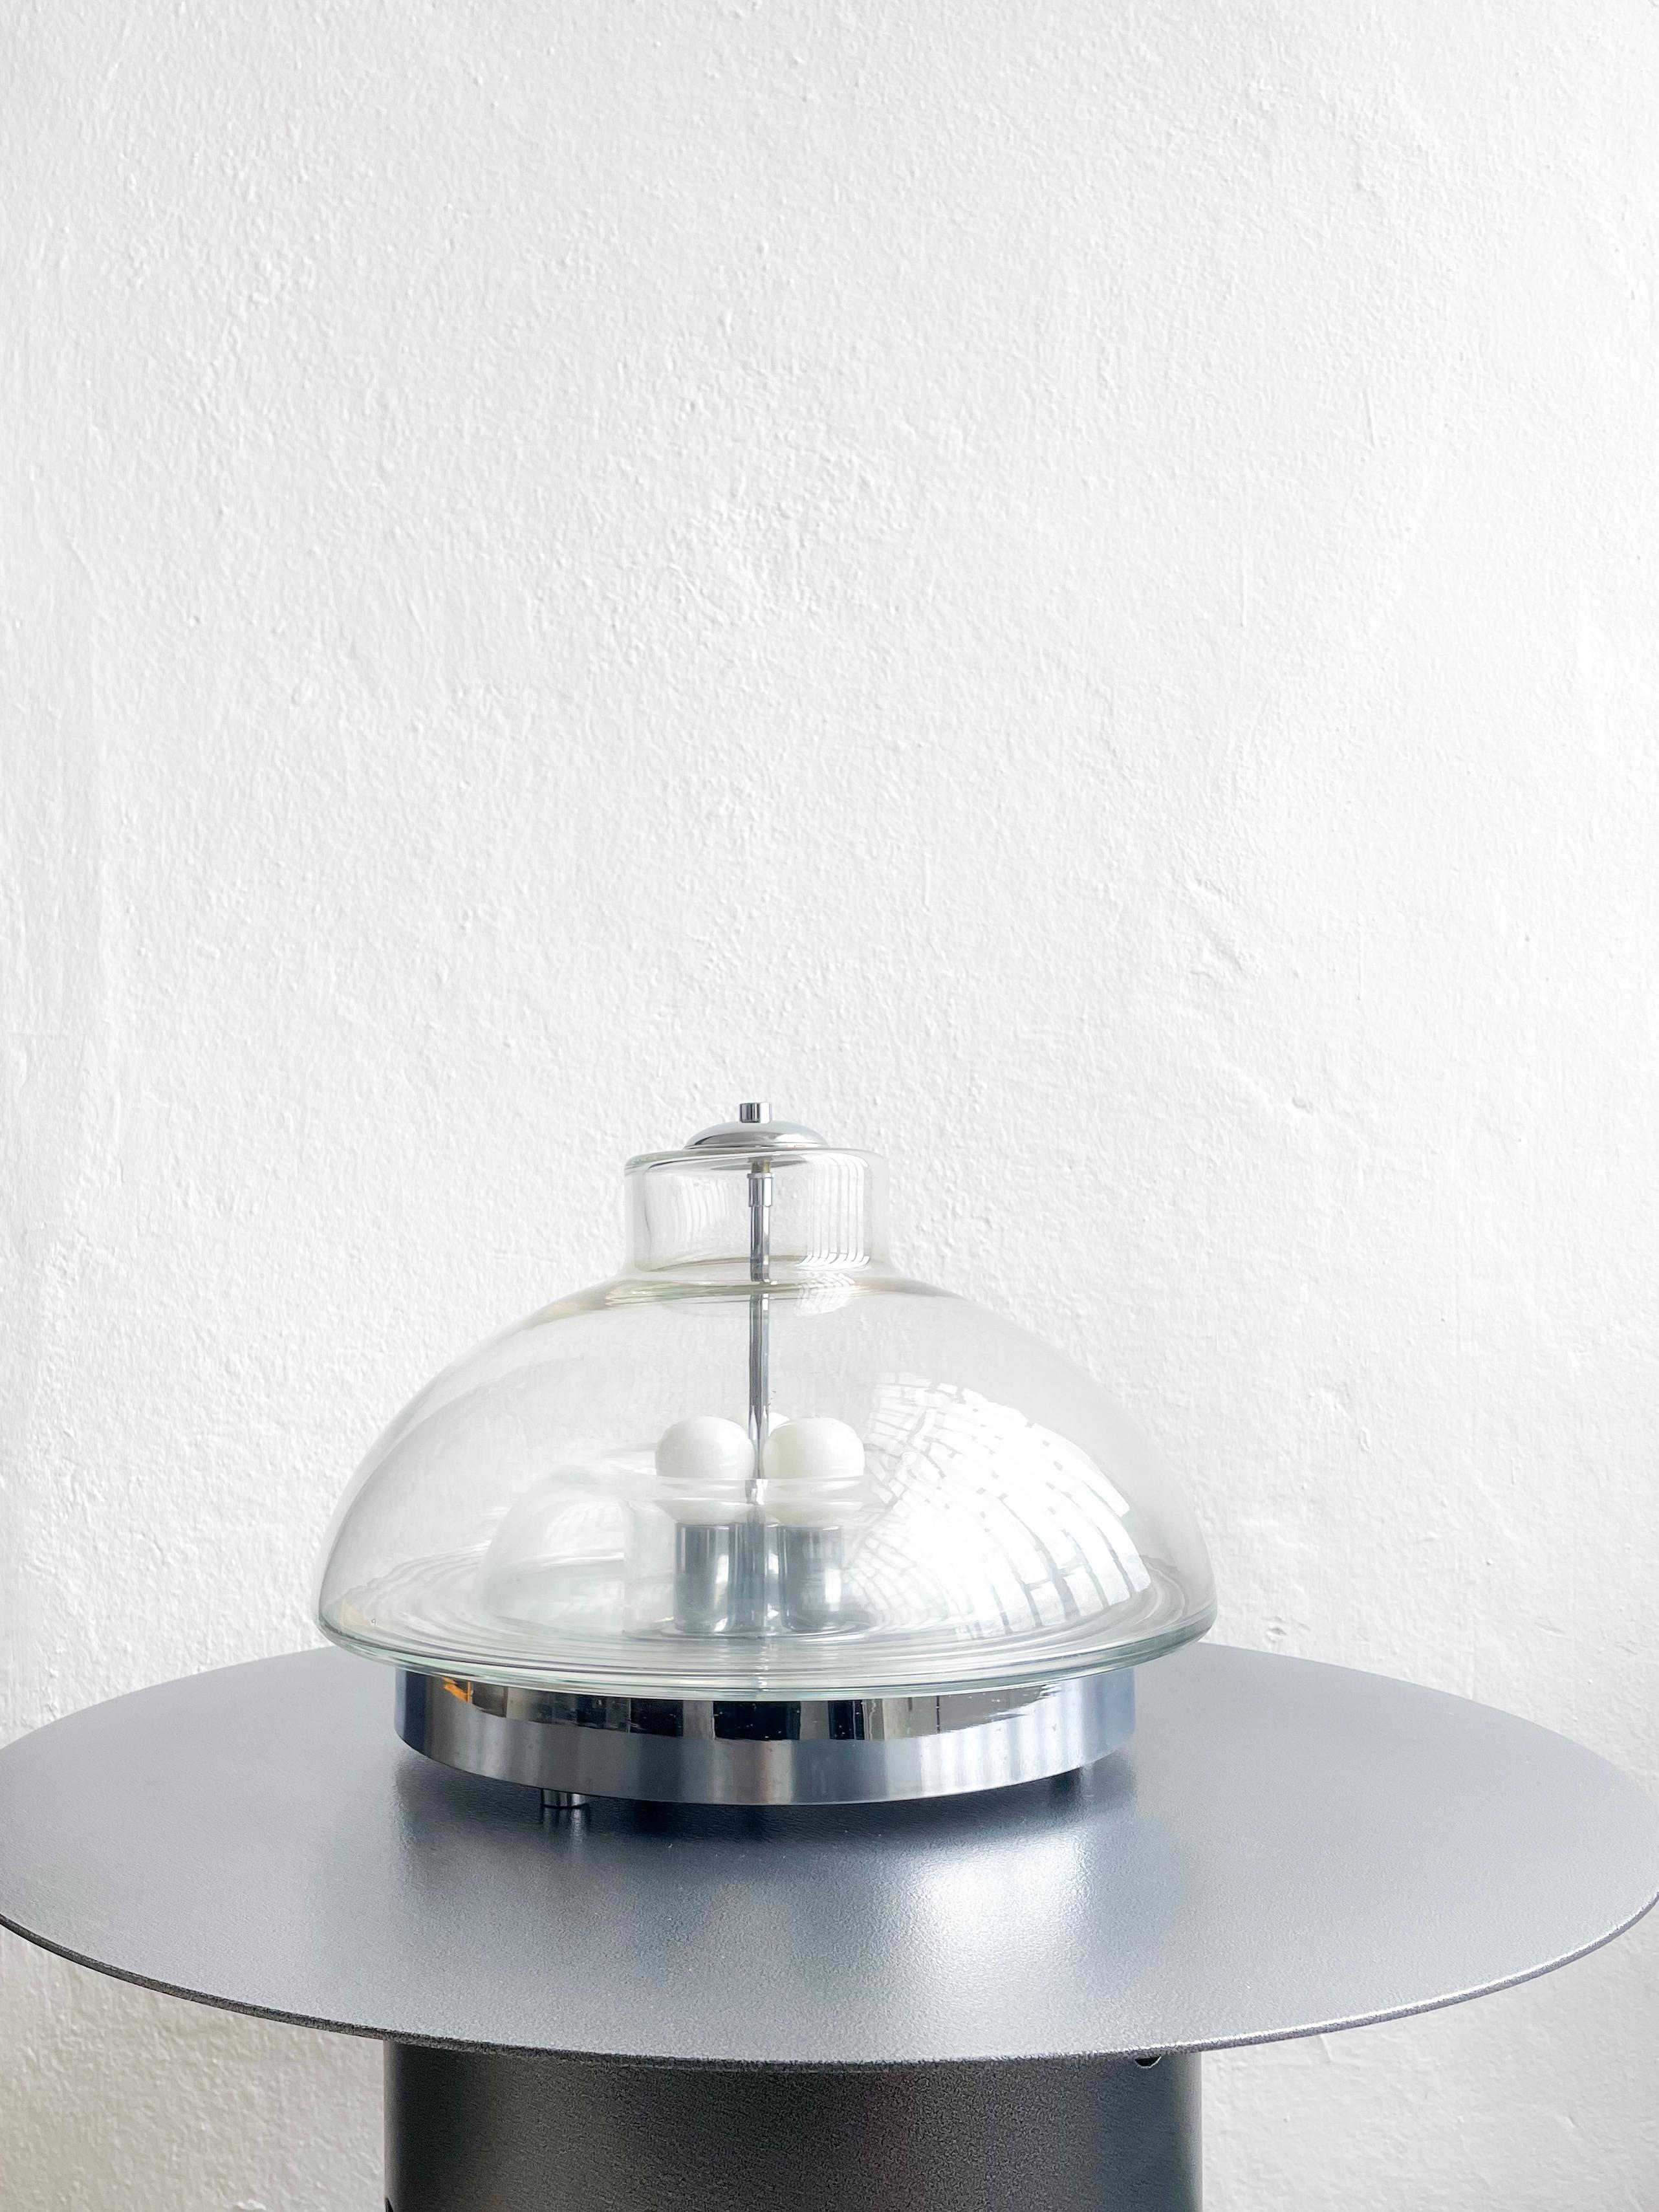 Superbe lampe de table de Murano datant de l'ère atomique, fabriquée en verre soufflé transparent et conçue dans le style du célèbre designer Carlo Nason et de ses créations pour Mazzega. La pièce rappelle notamment la célèbre lampe de table Lotus